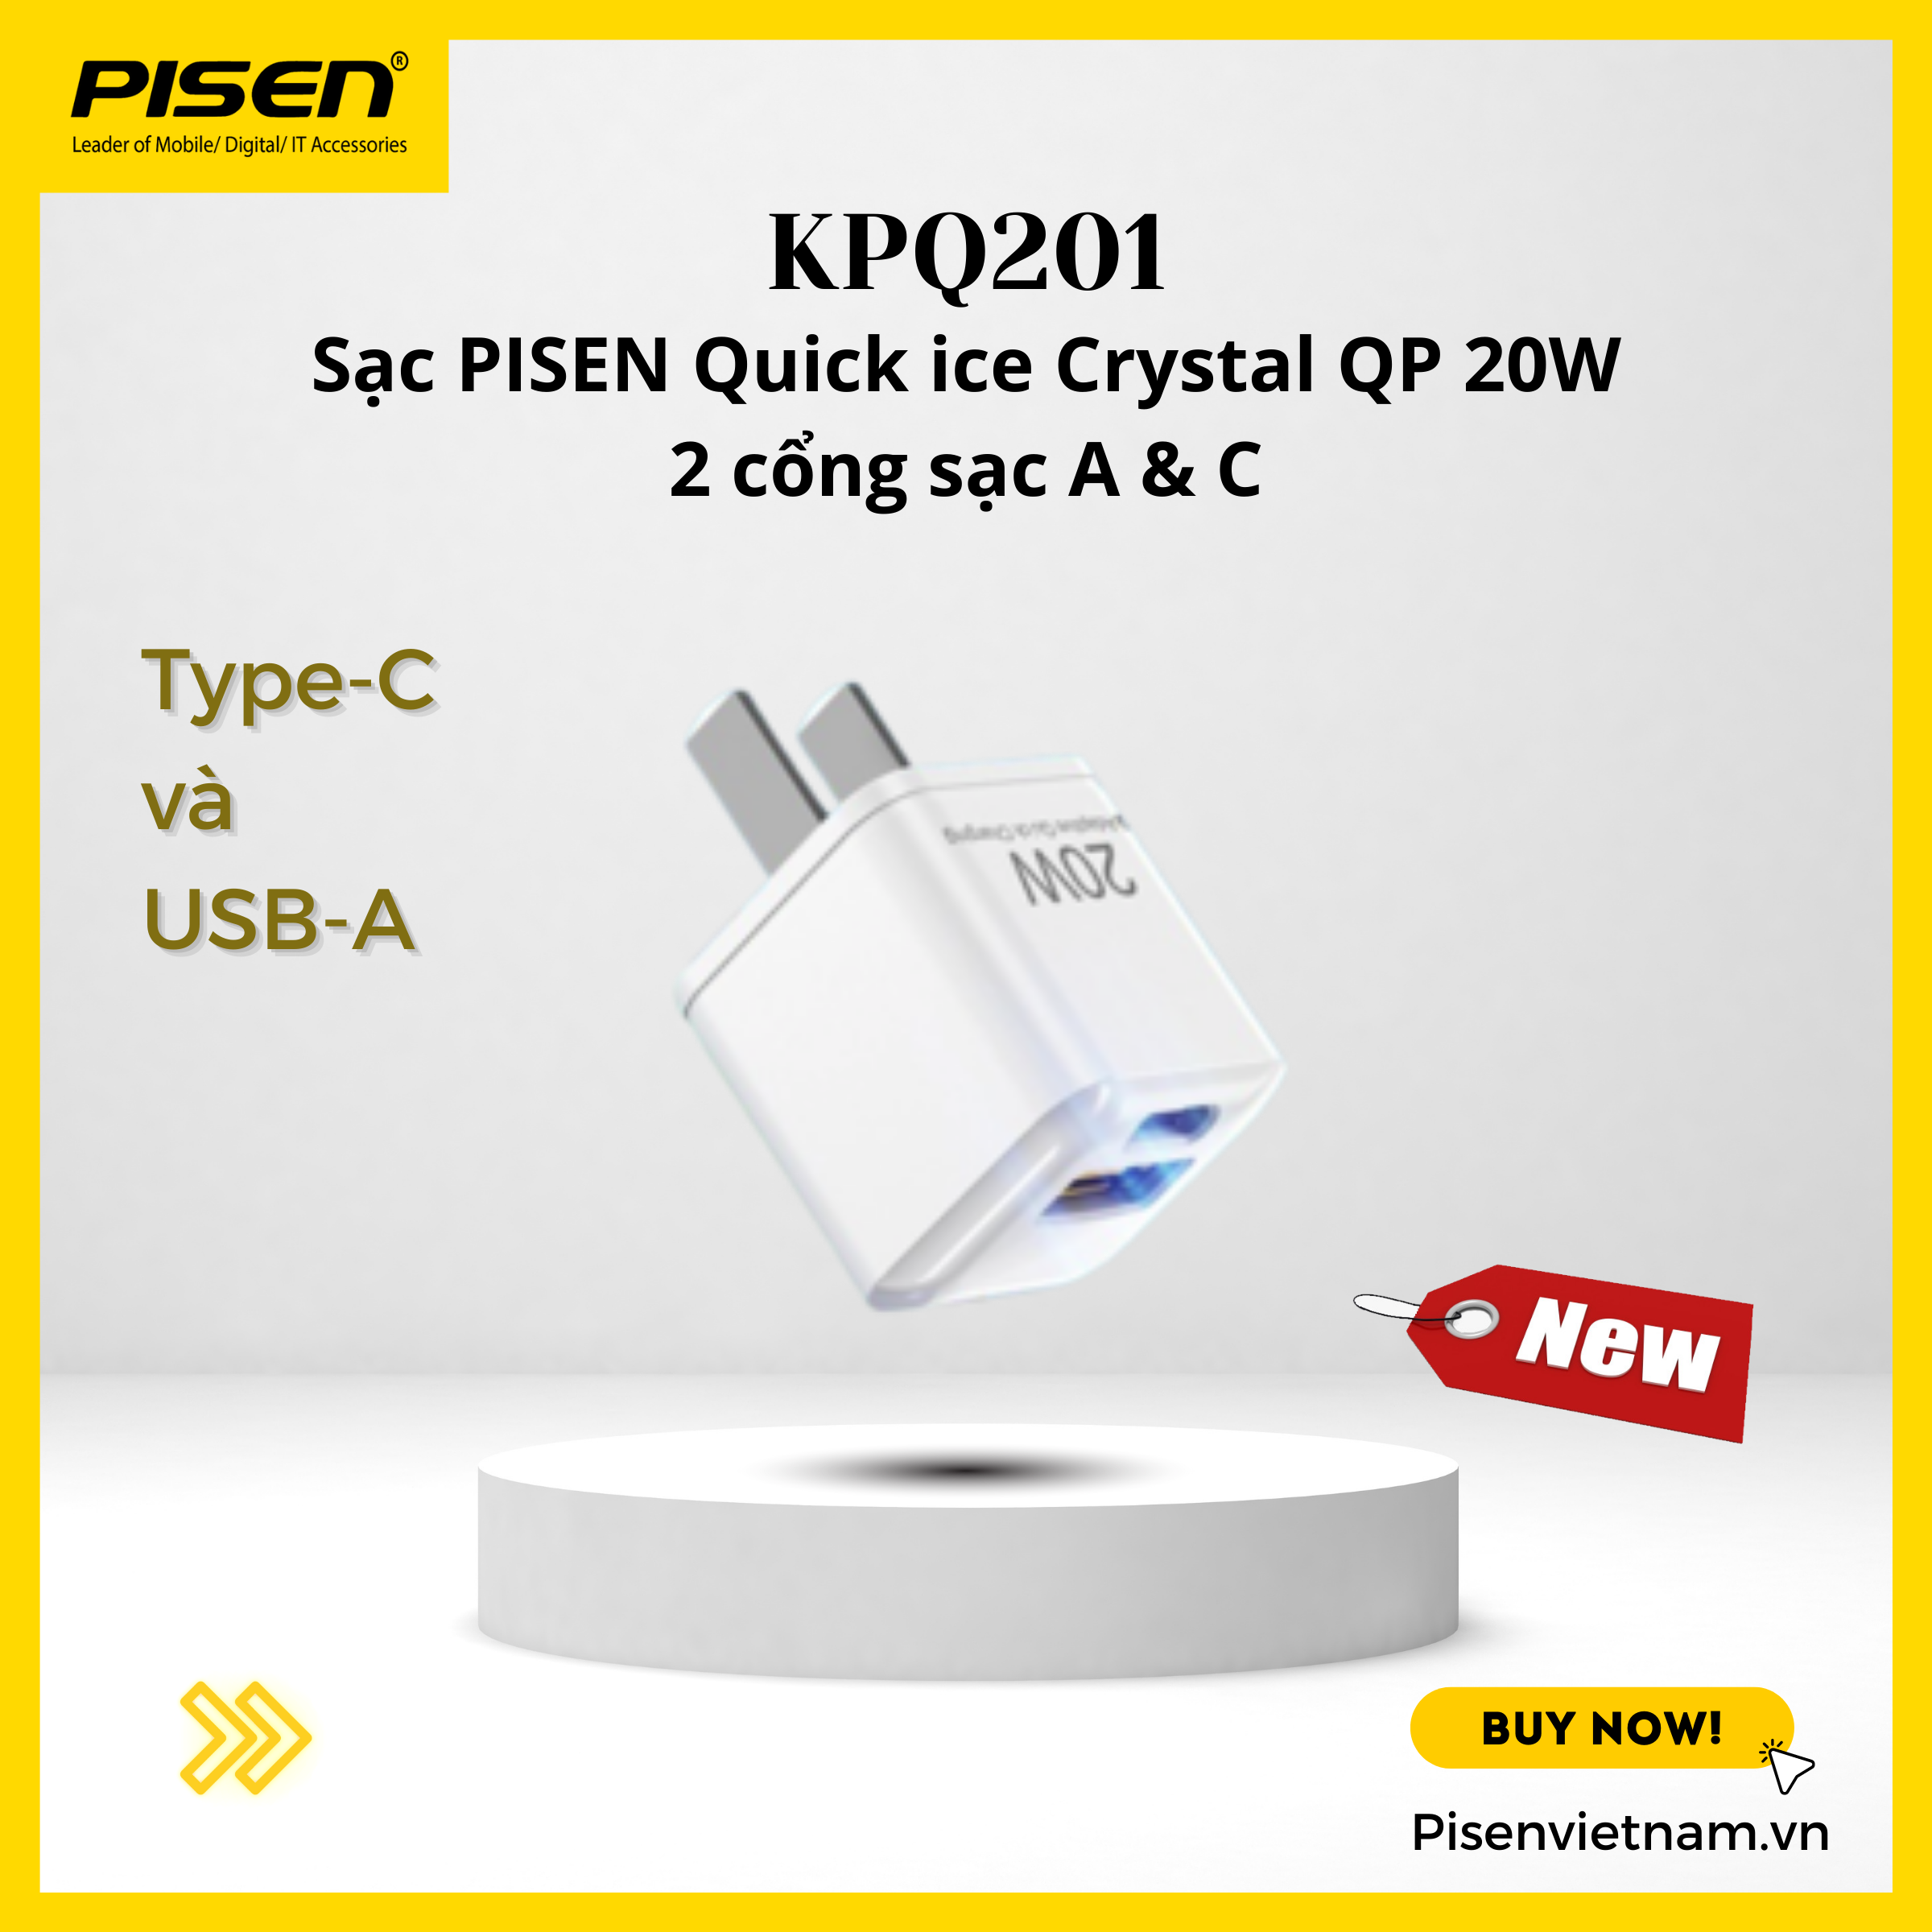 Sạc nhanh 20W siêu nhỏ 1C1A - PISEN QUICK ice Crystal Dual Port QP 20W KPQ201 - Bảo hành 18 tháng